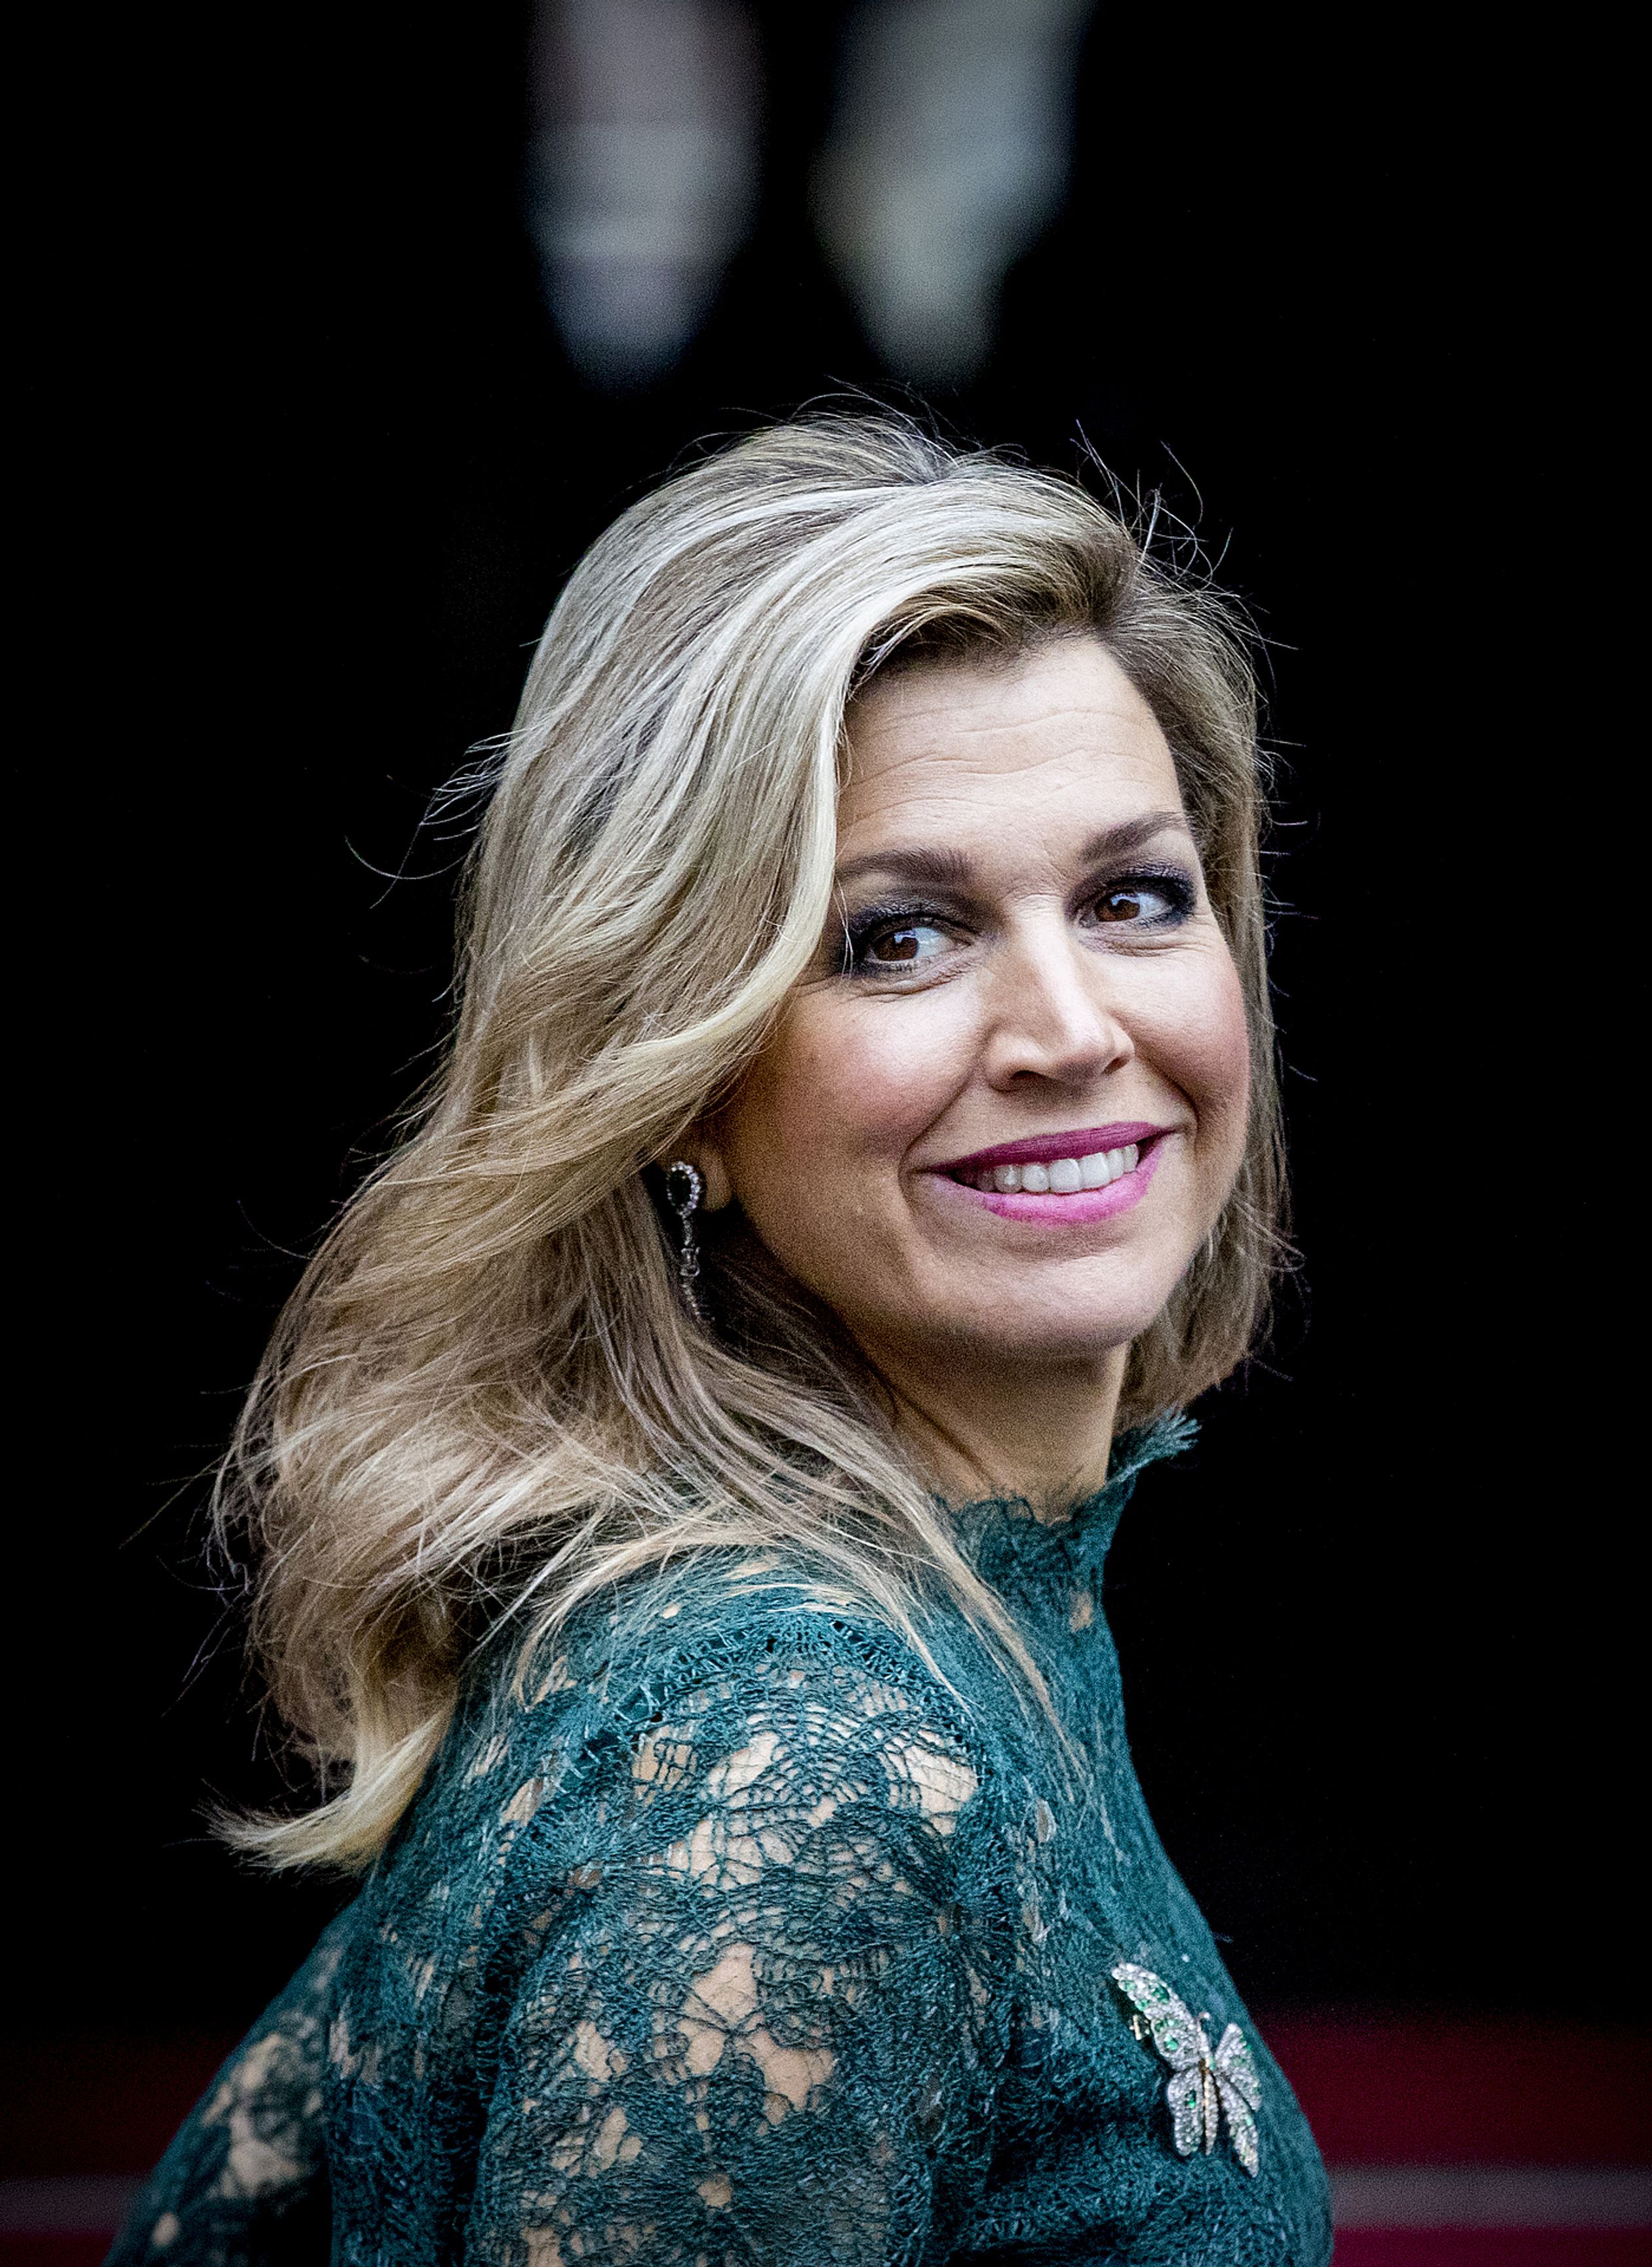 Máxima draagt dezelfde groene jurk bij de uitreiking van de Prins Claus Prijs in 2017.